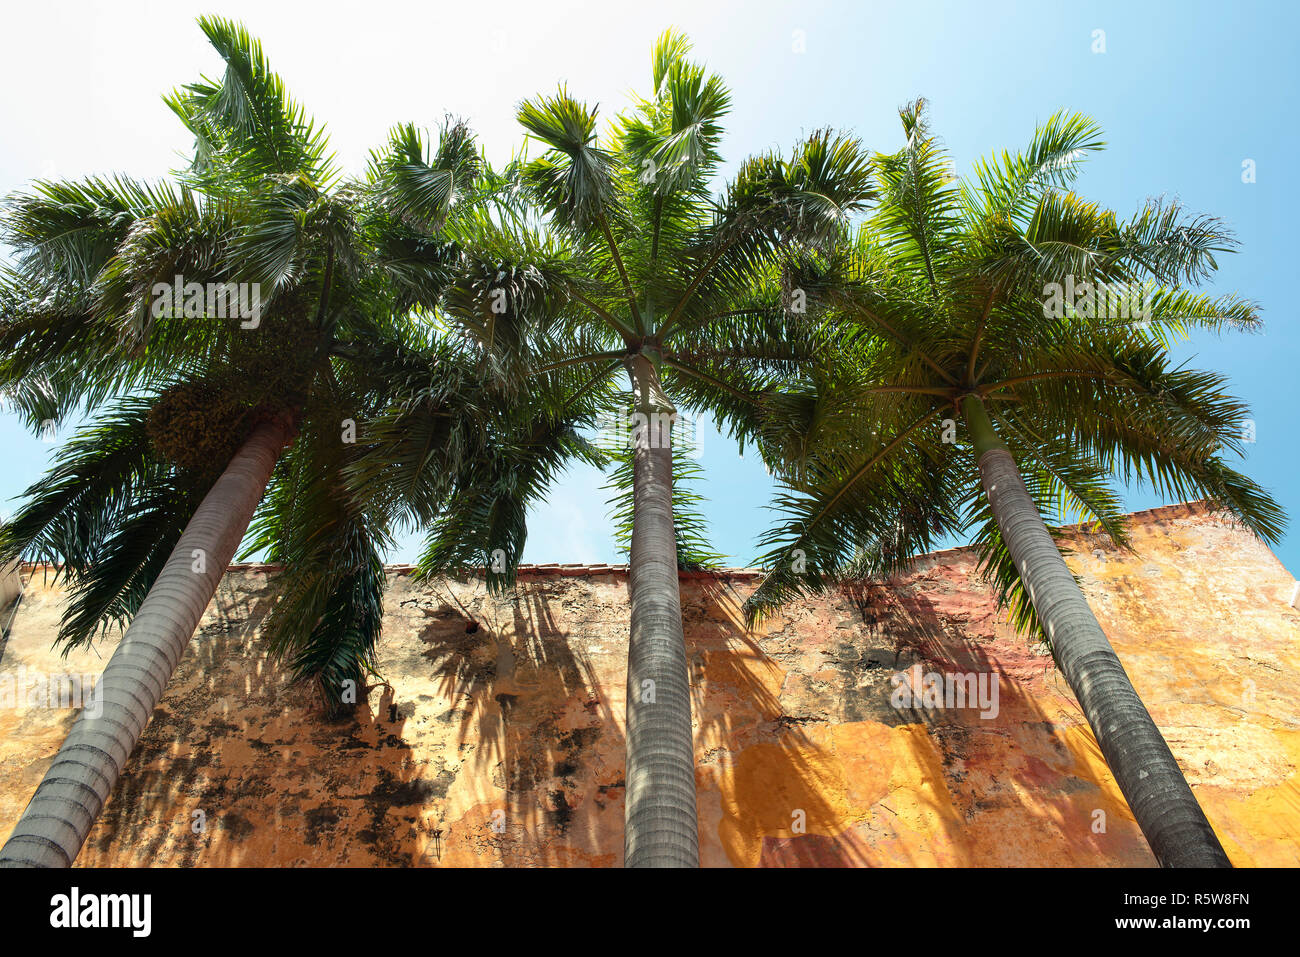 Royal Palm alberi da sotto contro il muro rustico. Architettura coloniale con i dettagli di tropicale nella città vecchia di Cartagena de Indias, Colombia. 2018 Foto Stock